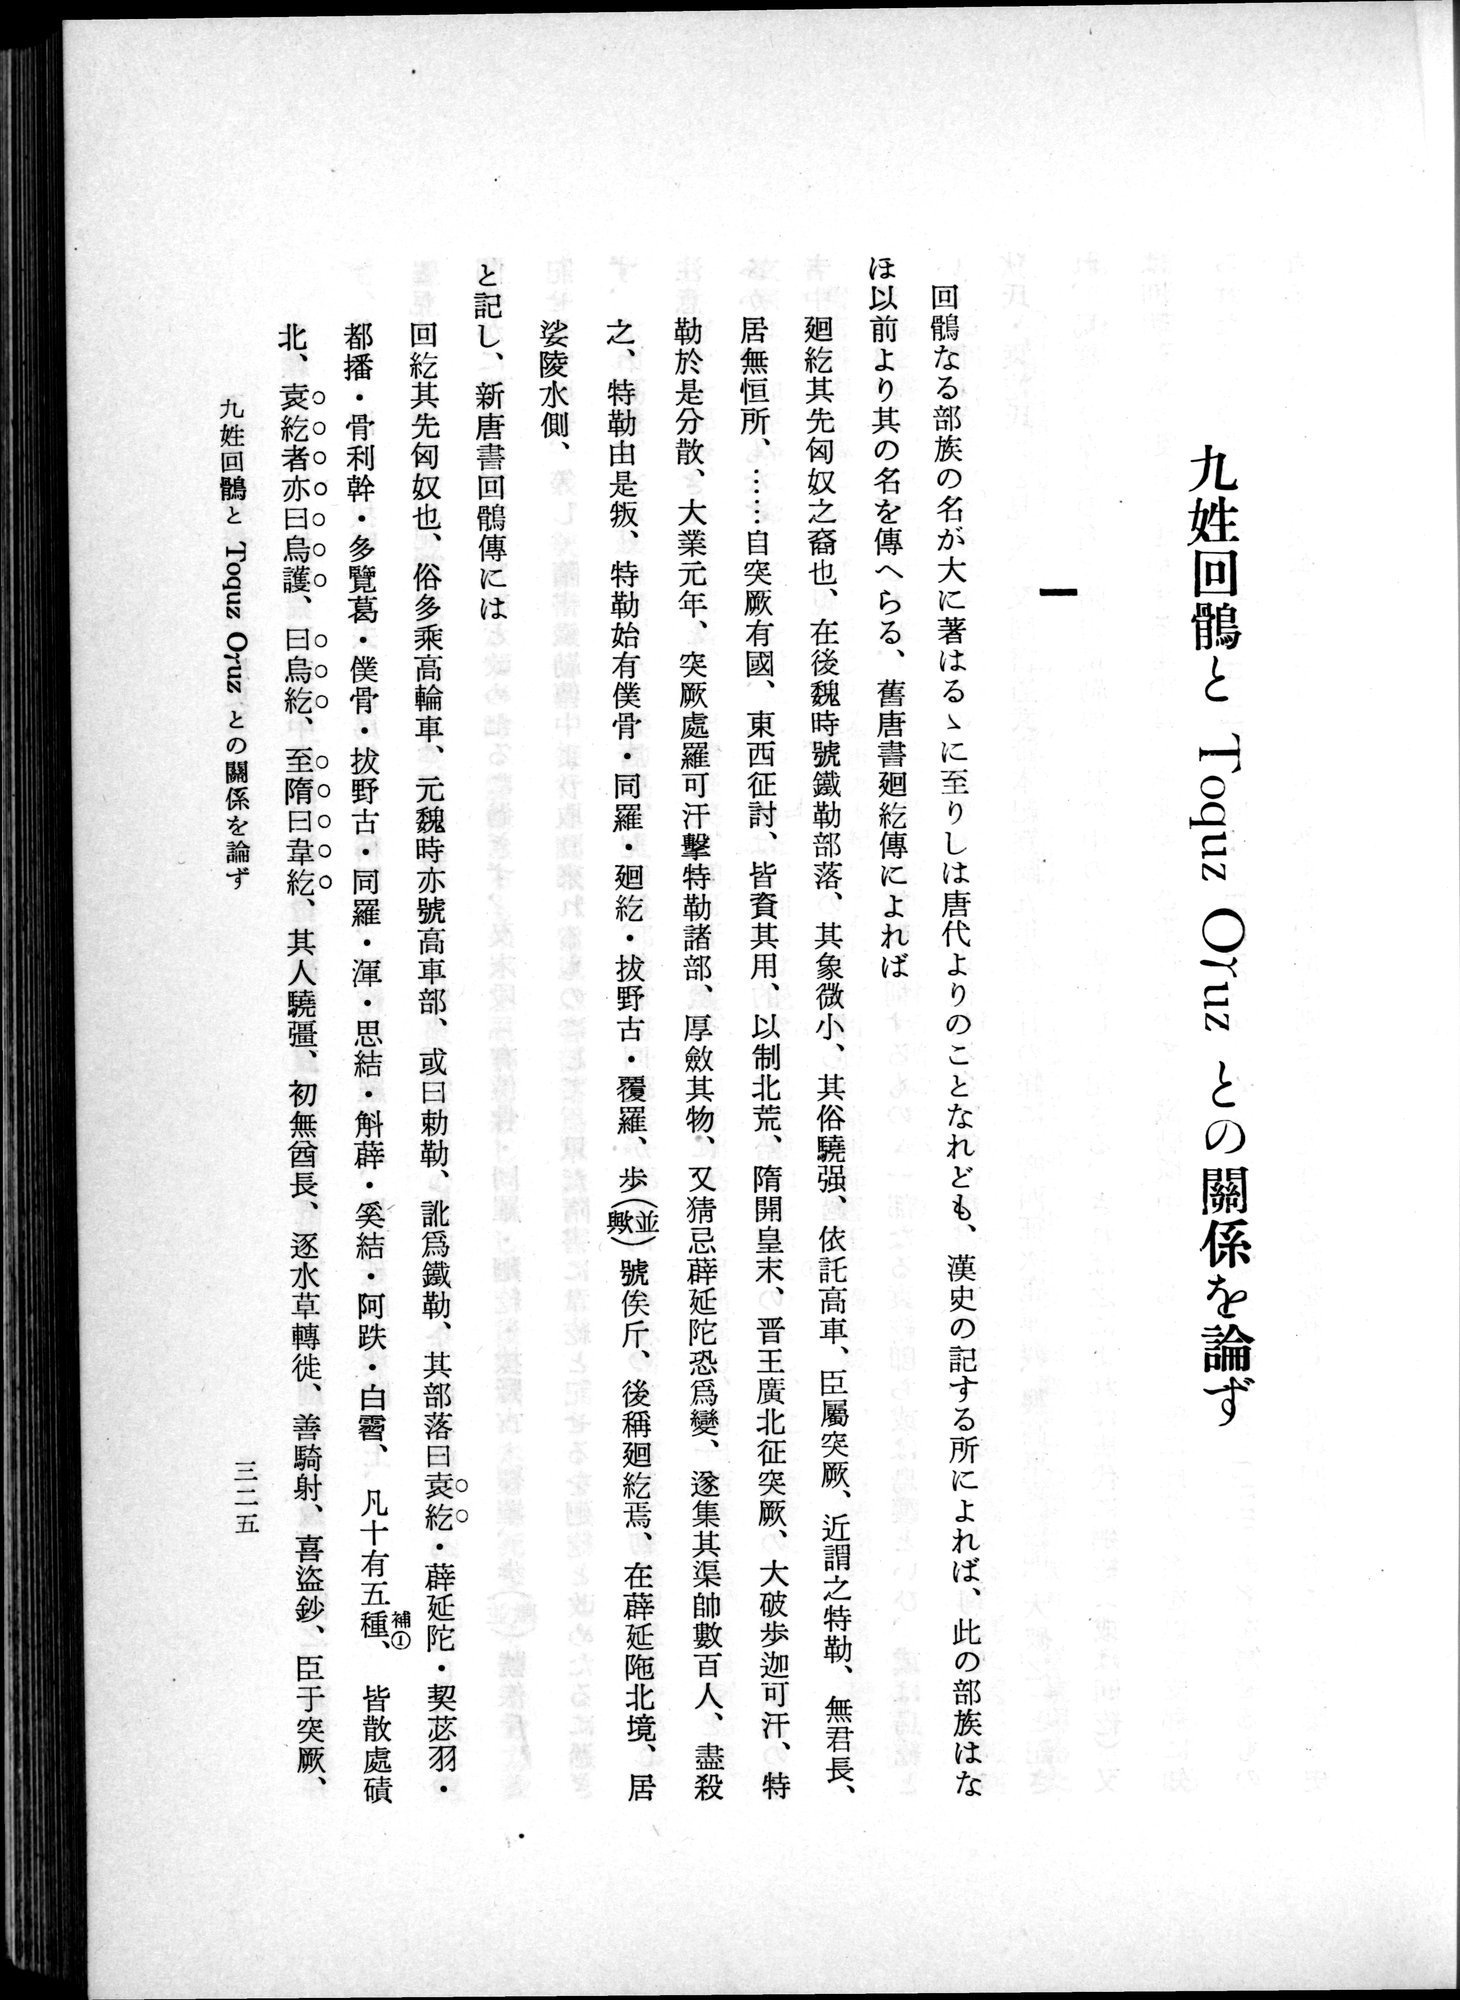 羽田博士史学論文集 : vol.1 / 363 ページ（白黒高解像度画像）